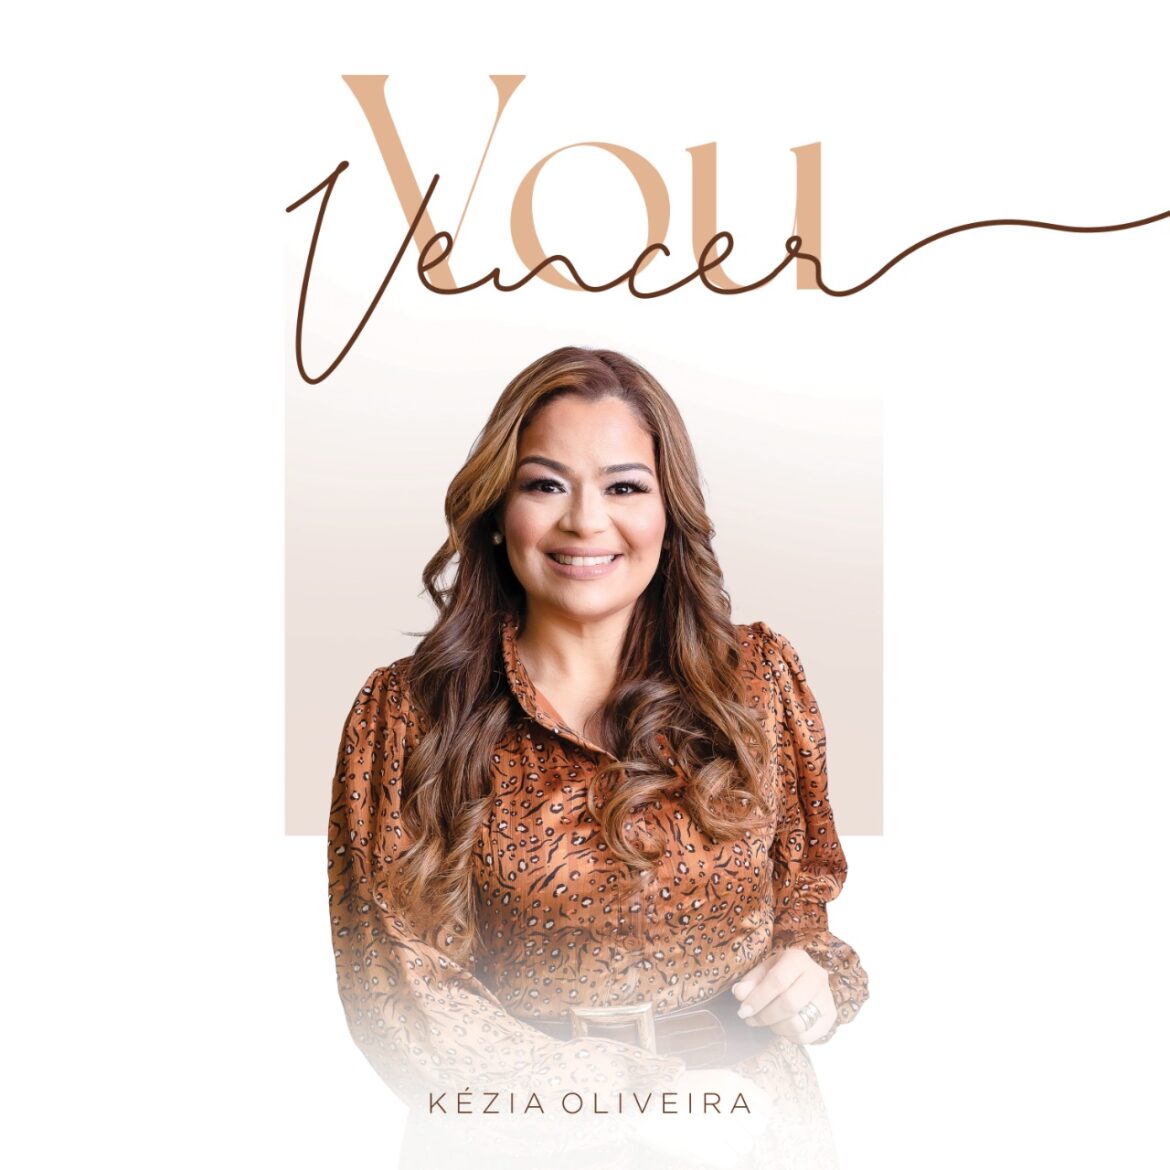 Kézia Oliveira lança a canção “Vou Vencer” pela Central Gospel Music